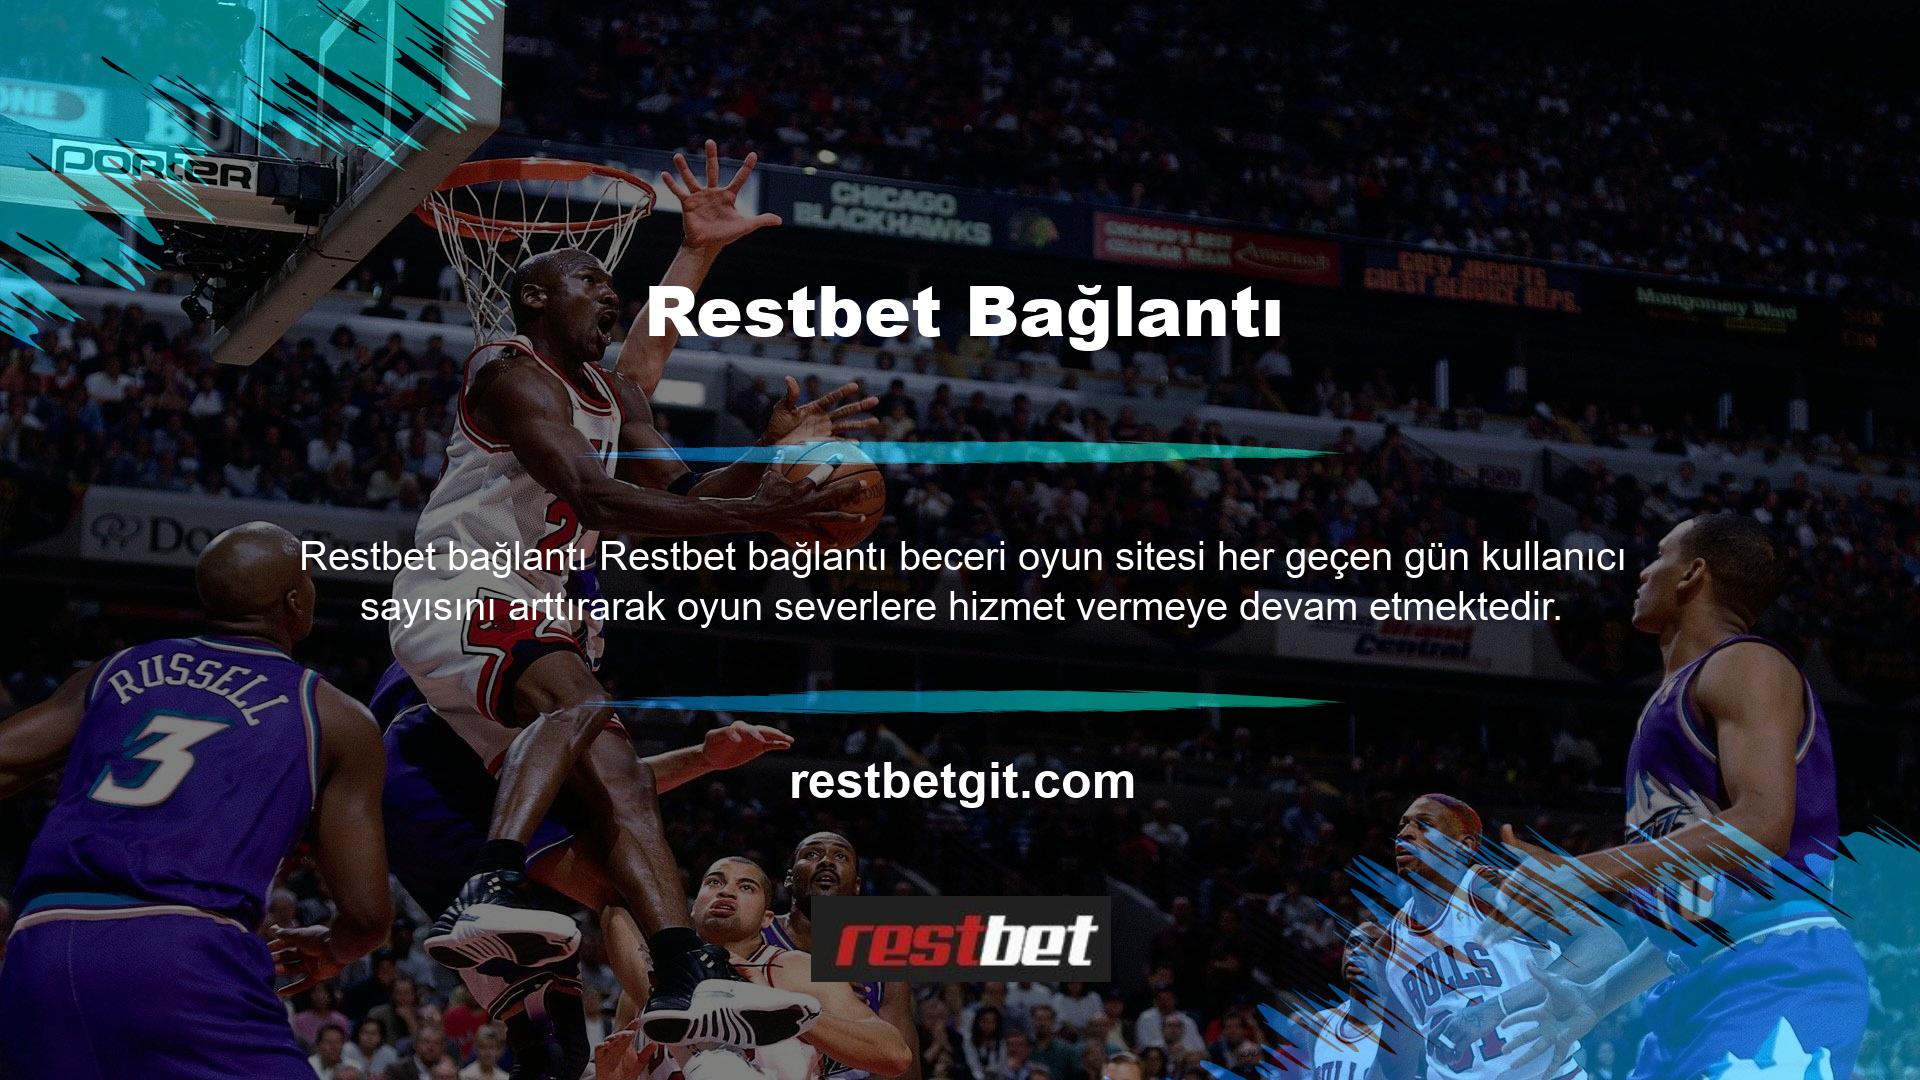 Spor bahislerinin başlangıcından bu yana basketbol bahisleri alanında ünlenen Restbet Bahisinin basketbol maçlarından kısa sürede büyük kazançlar elde ettiği söylenebilir